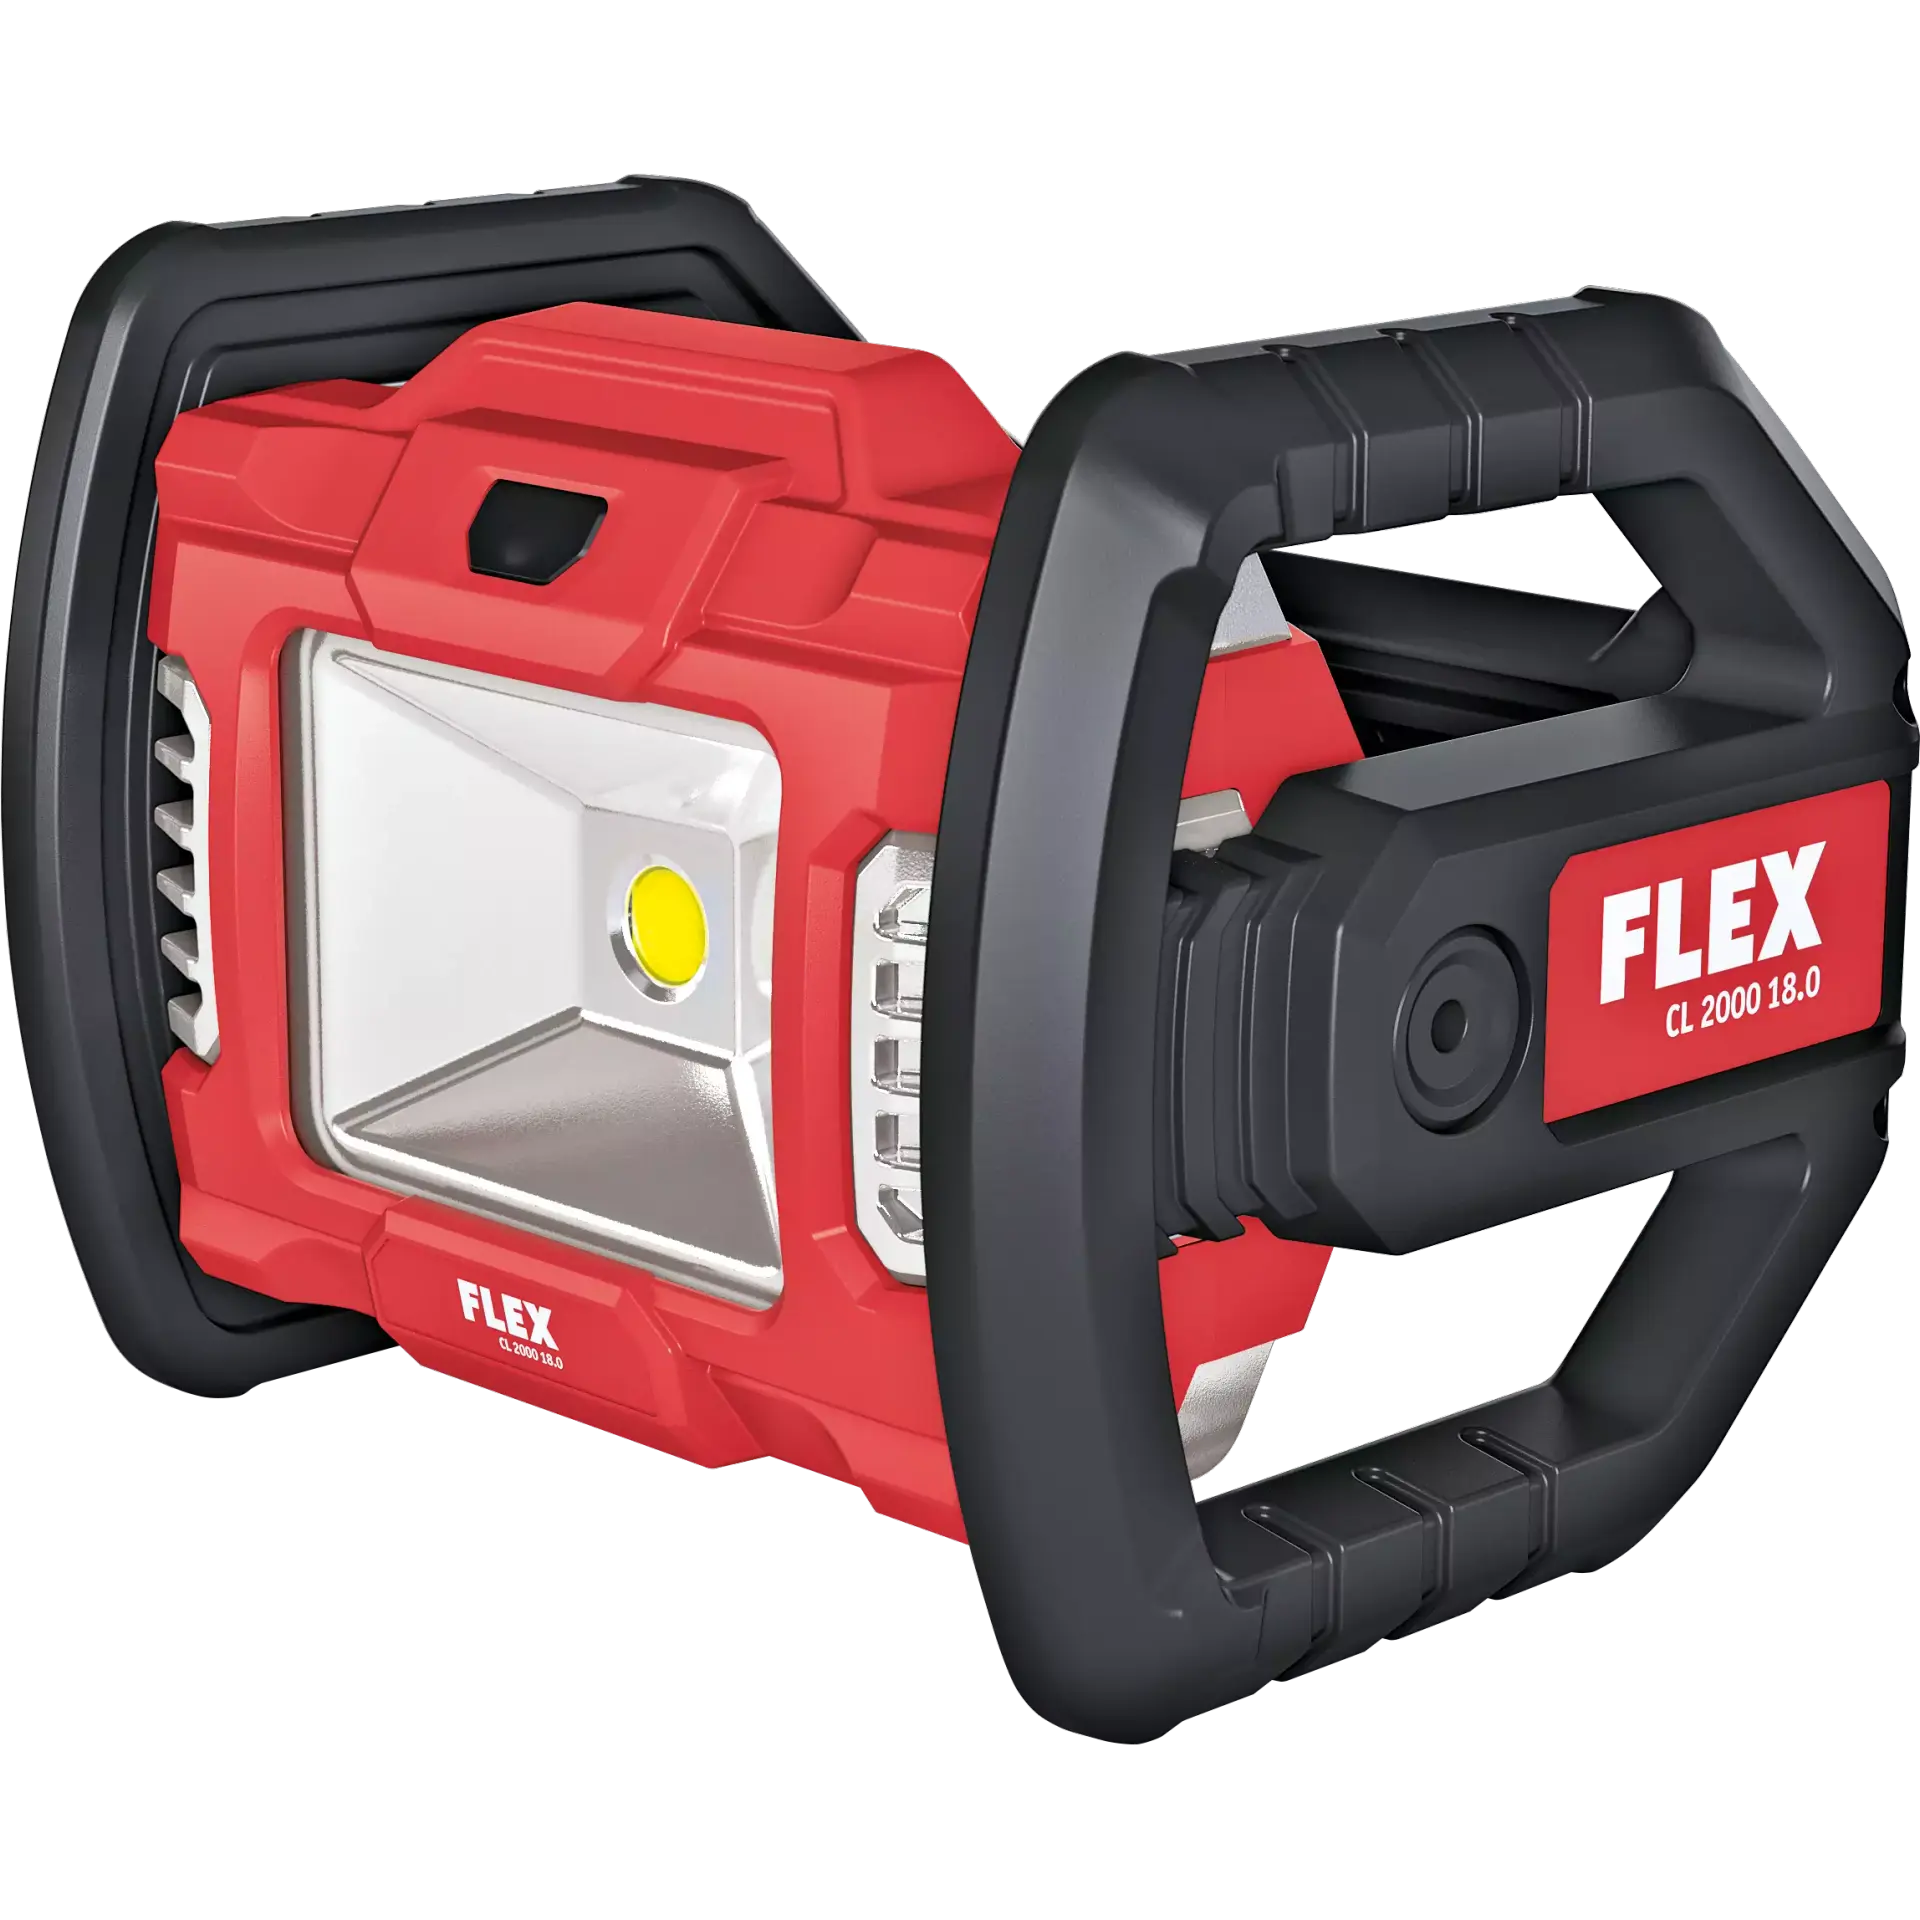 485011 FLEX PROTON フレックス プロトン コードレス LEDライト (バッテリー別売り) FLEX CL2000-18.0-EC